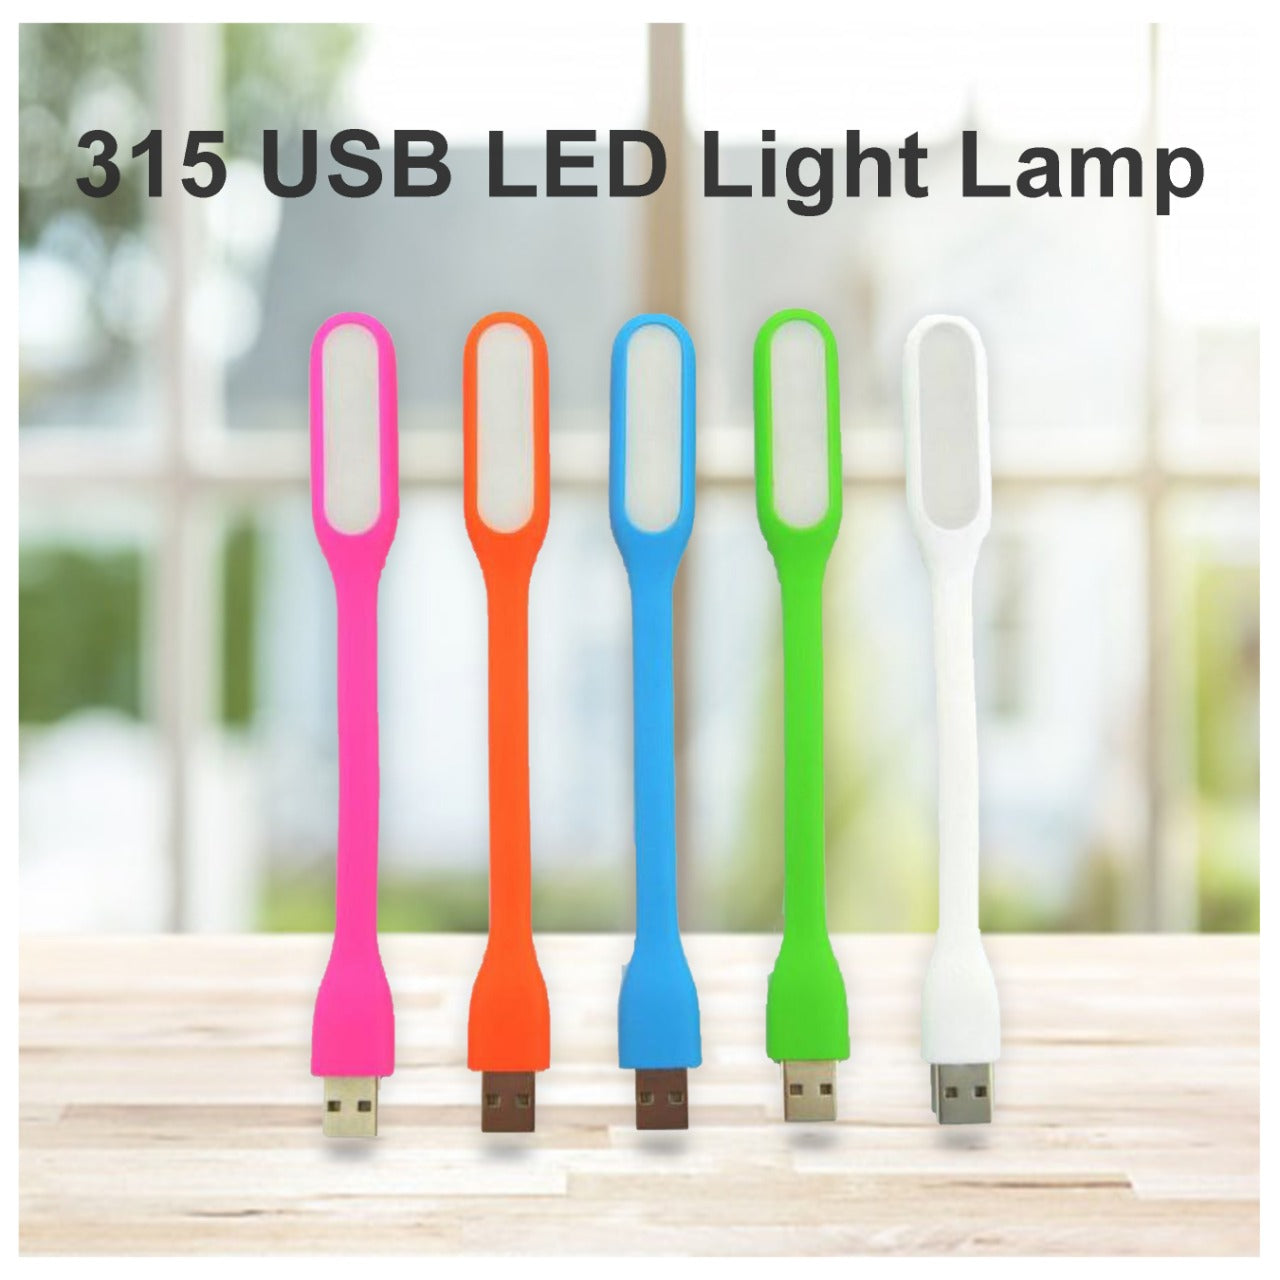 USB LED லைட் லாம்ப்